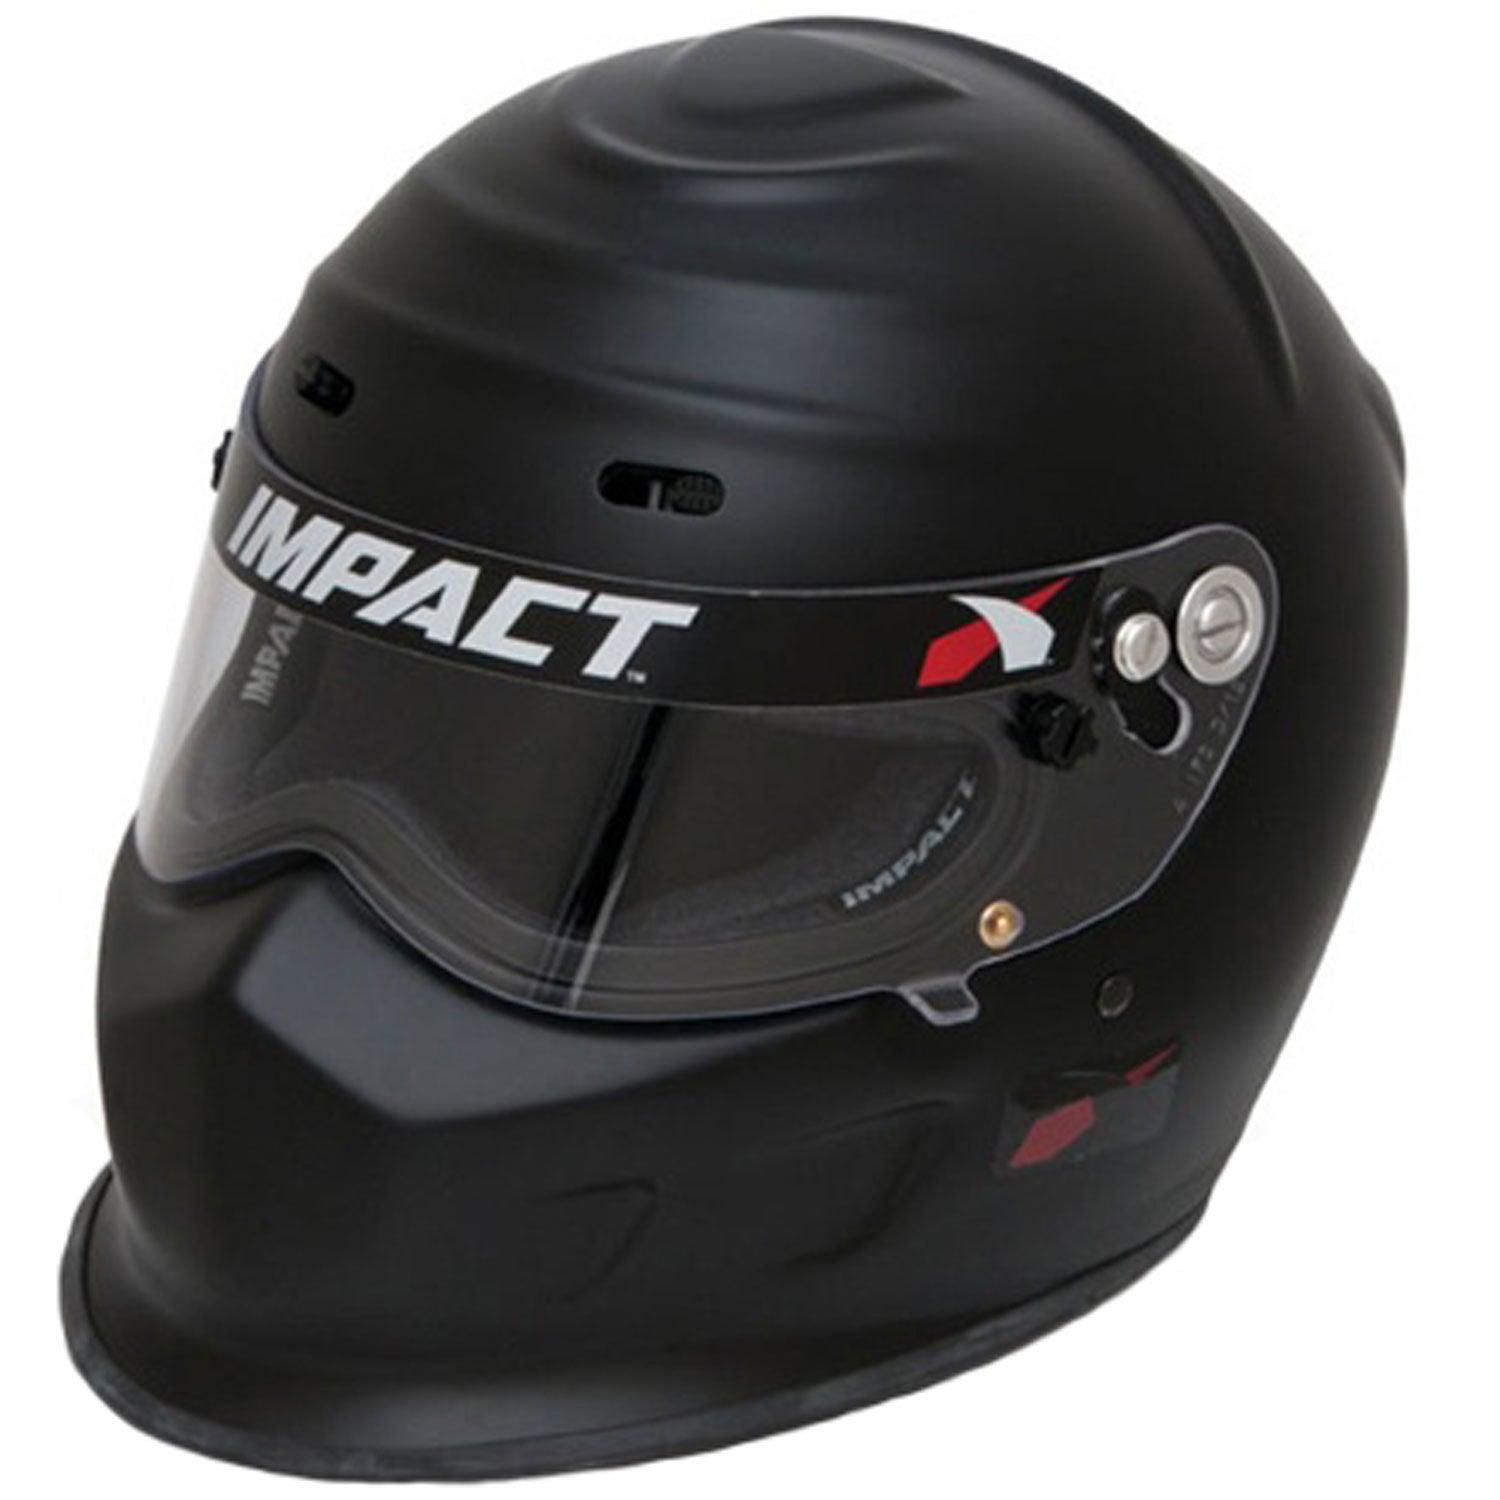 Helmet Champ Medium Flat Black SA2020 - Burlile Performance Products